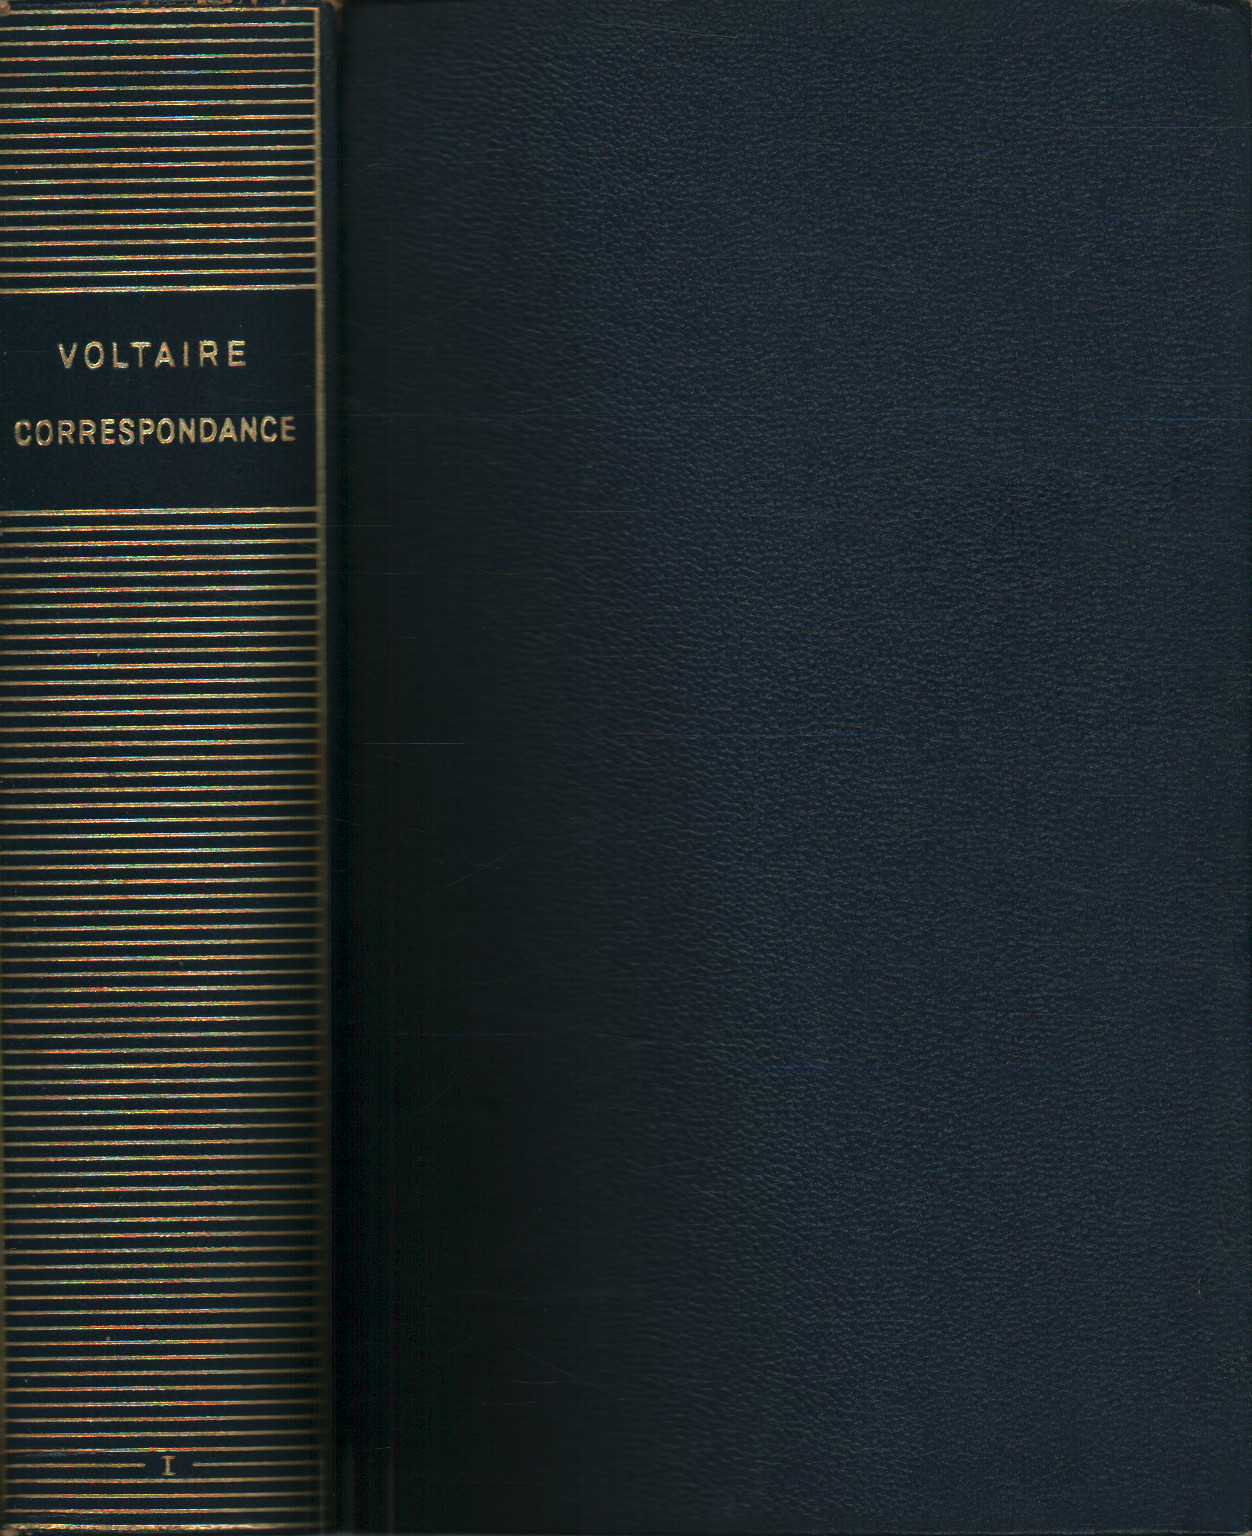 Corrispondance de Voltaire (tome I), s.a.